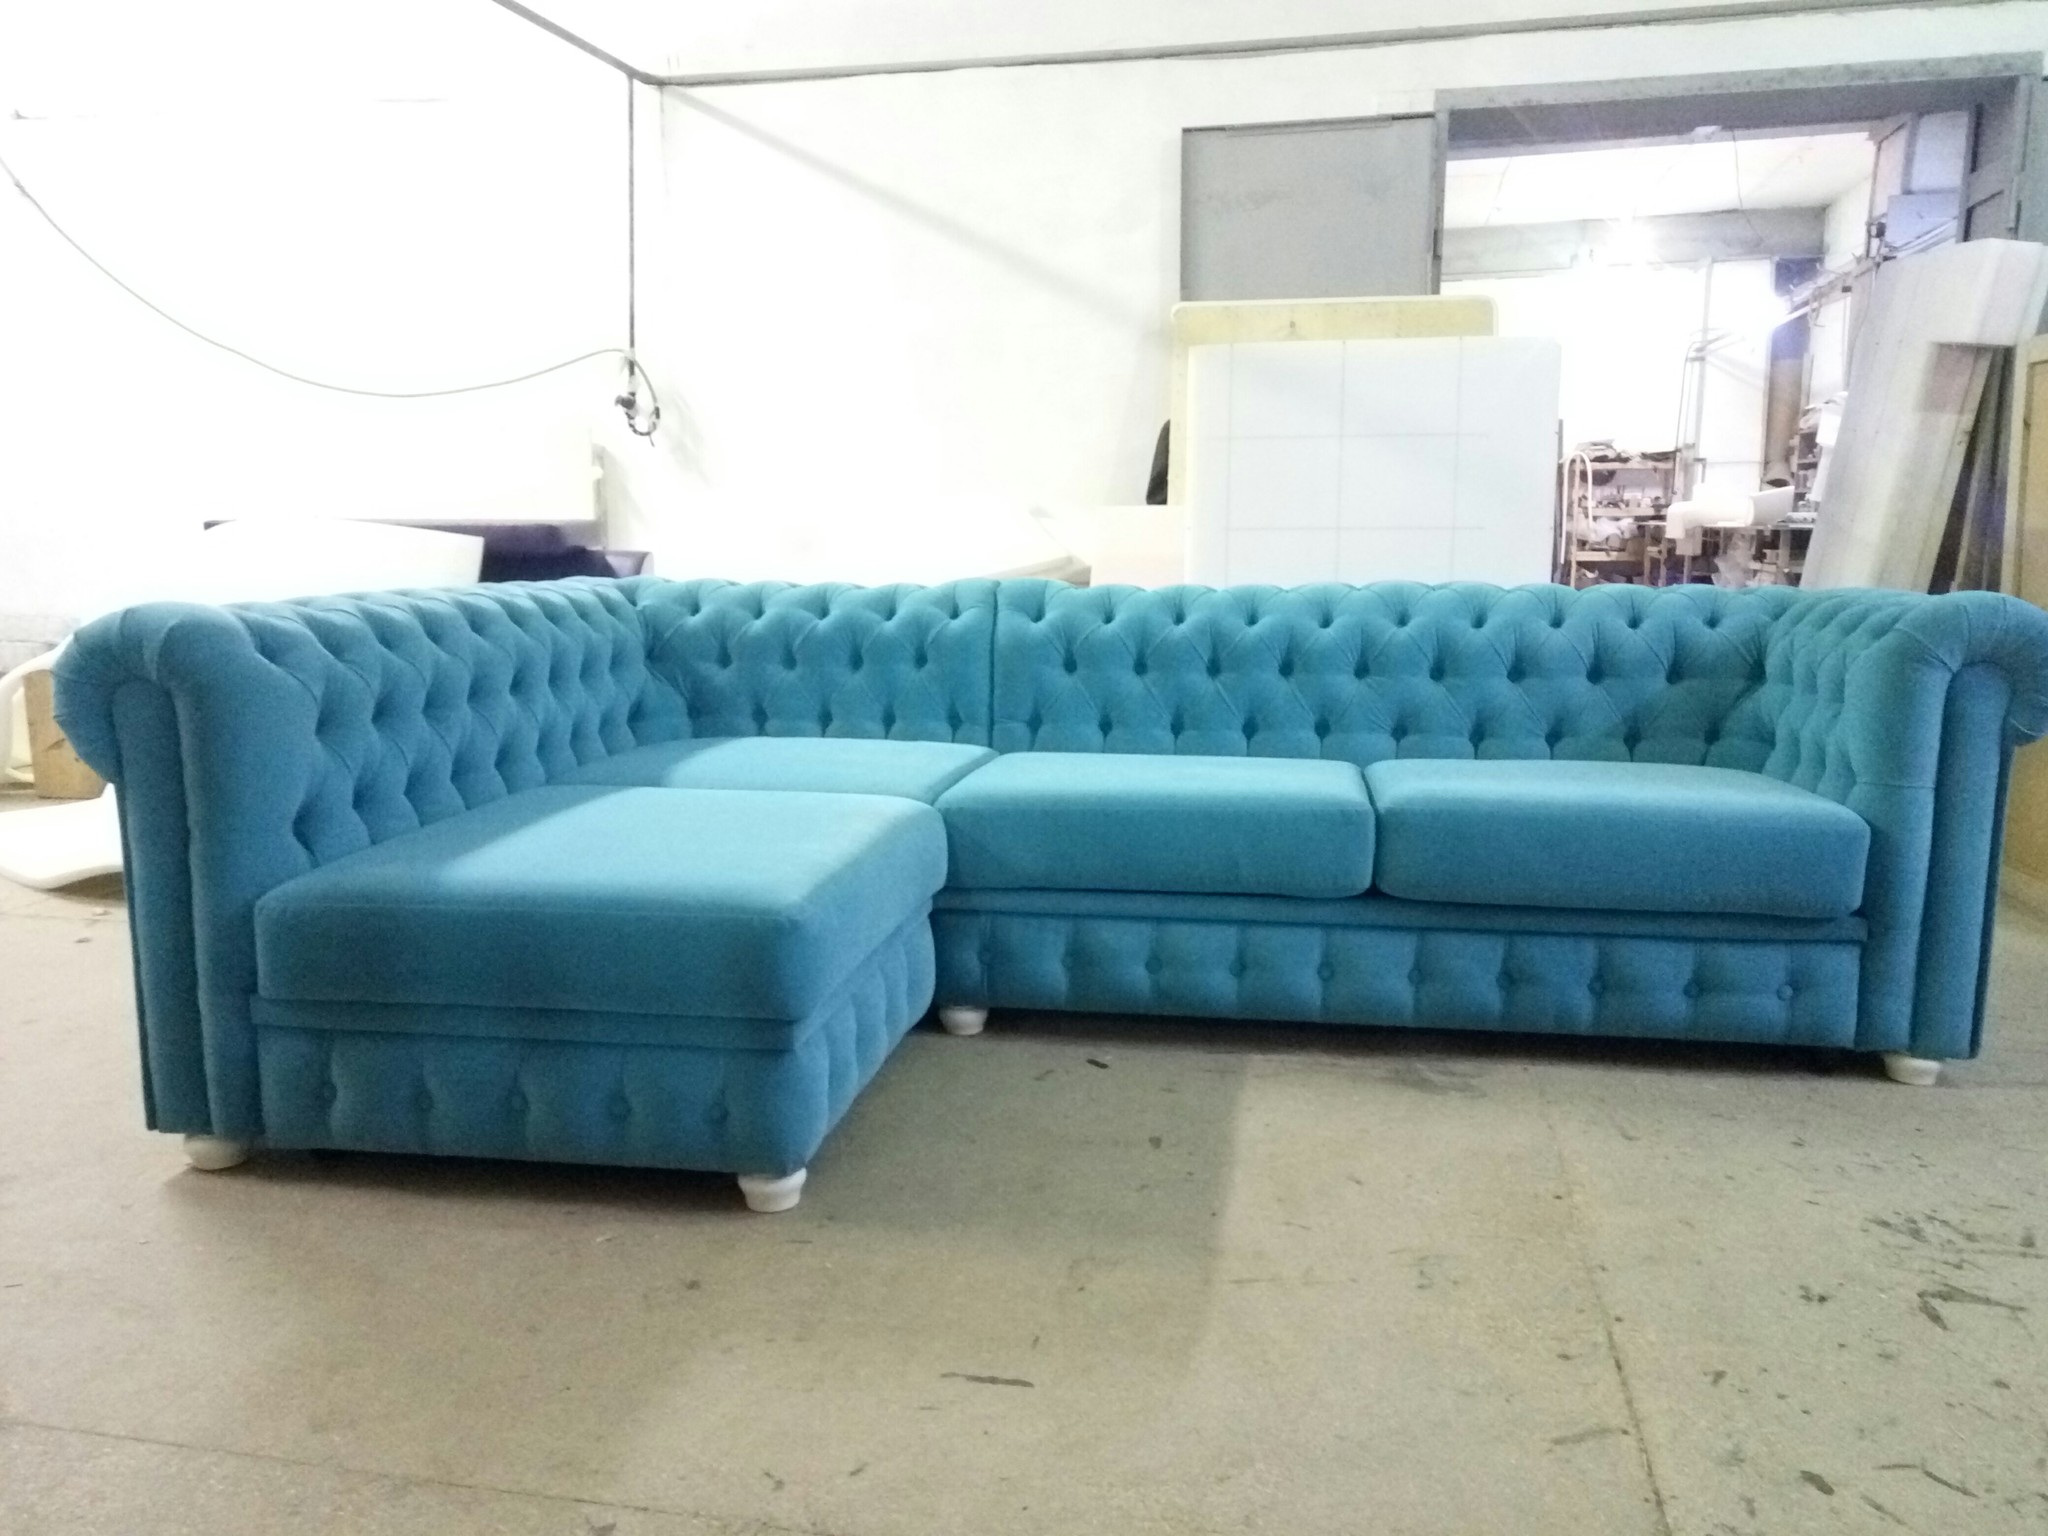 бархатный диван с каретной стяжкой